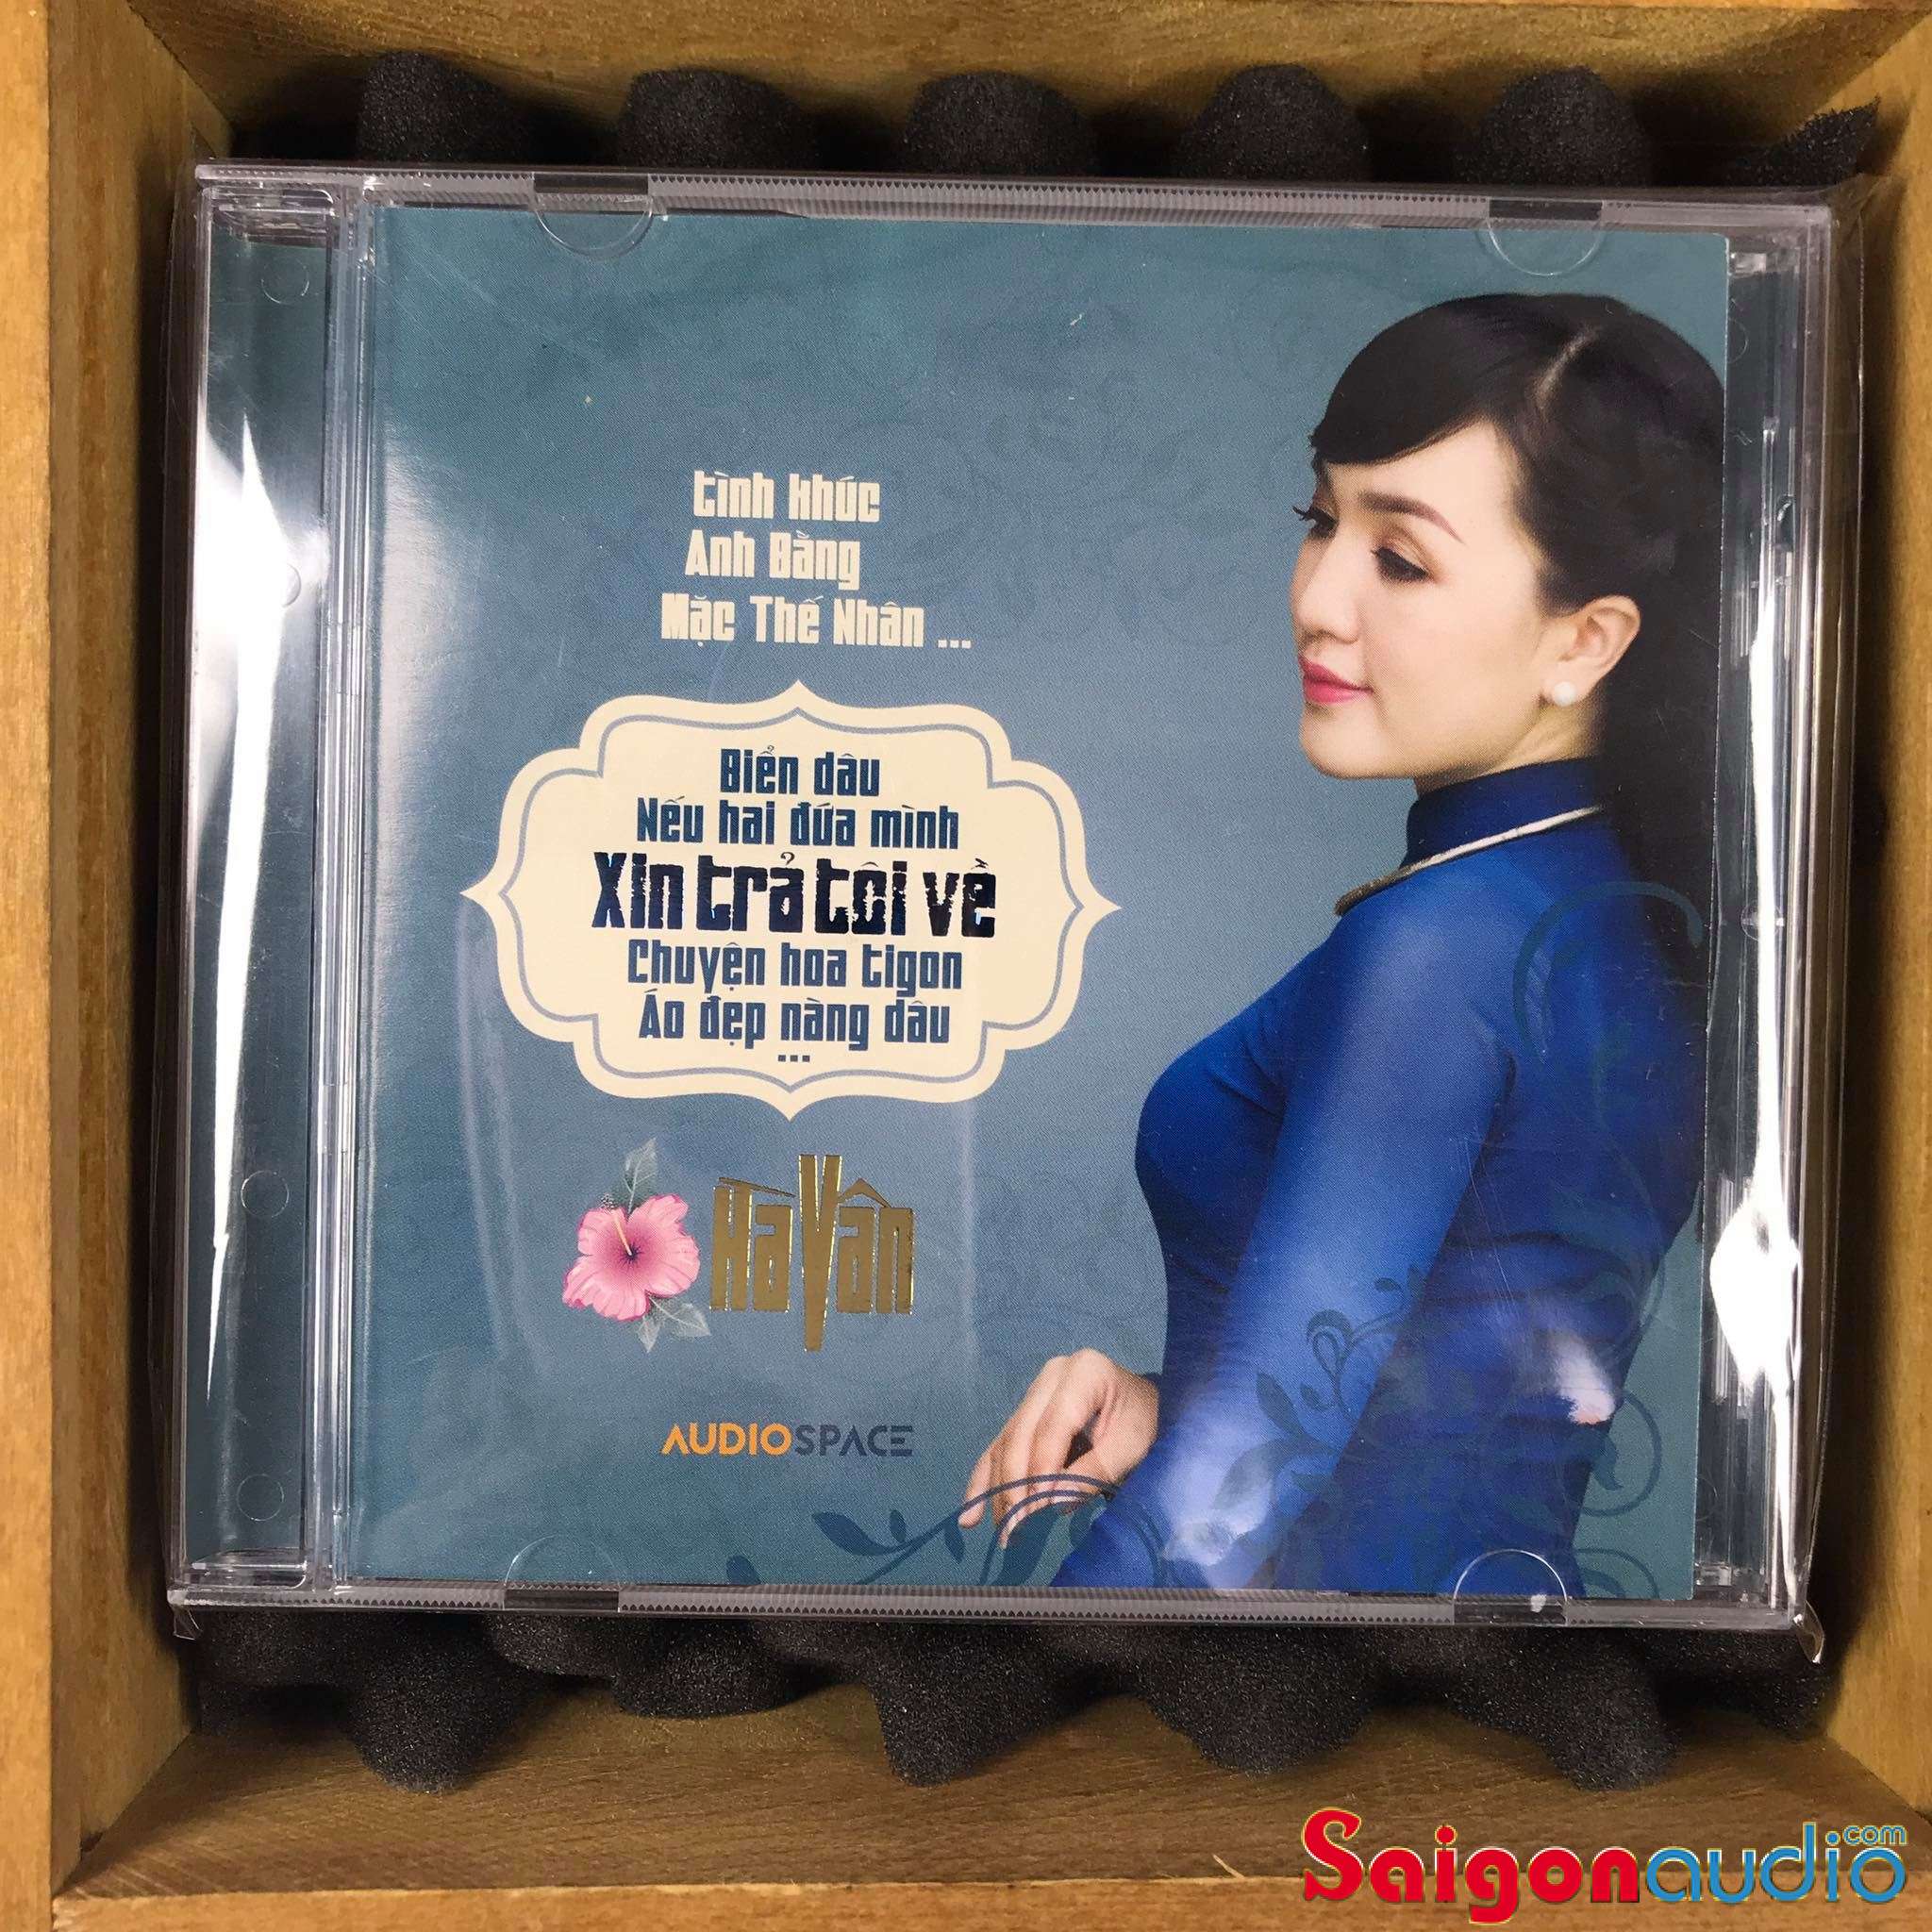 Đĩa CD gốc Hà Vân - Tình Khúc Anh Bằng - Mạc Thế Nhân (Free ship khi mua 2 đĩa CD cùng hoặc khác loại)